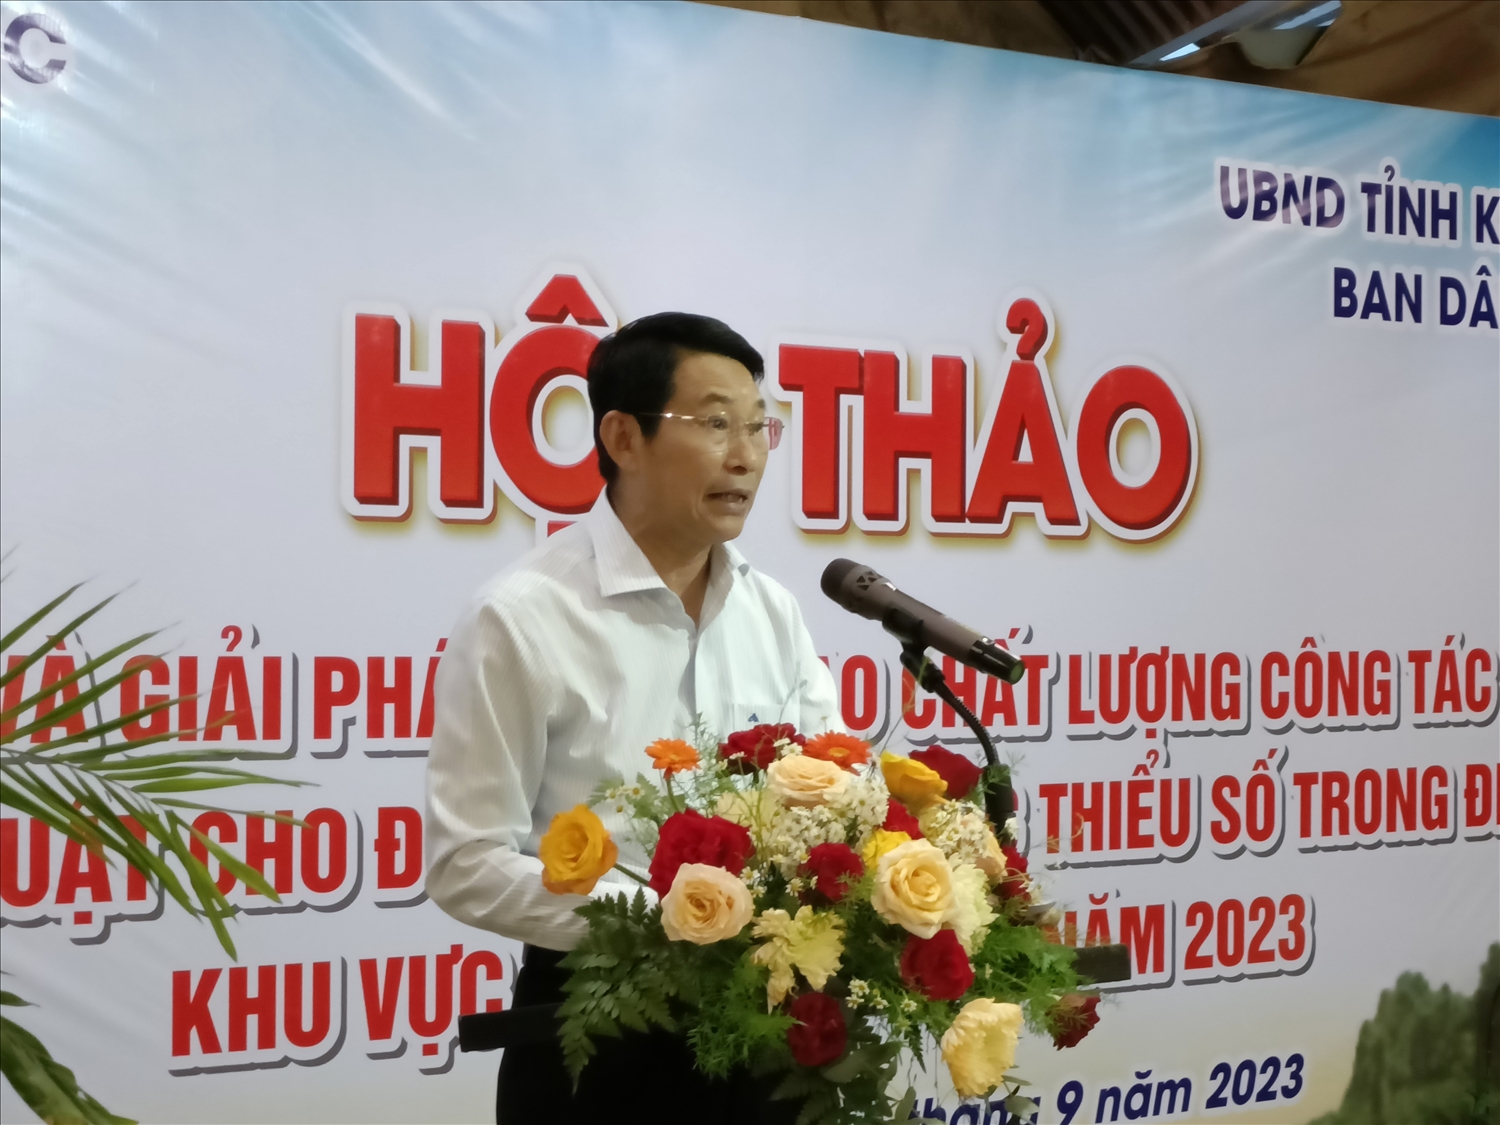 Ông Đinh Văn Thiệu, Phó chủ tịch UBND tỉnh Khánh Hòa phát biểu tại Hội thảo